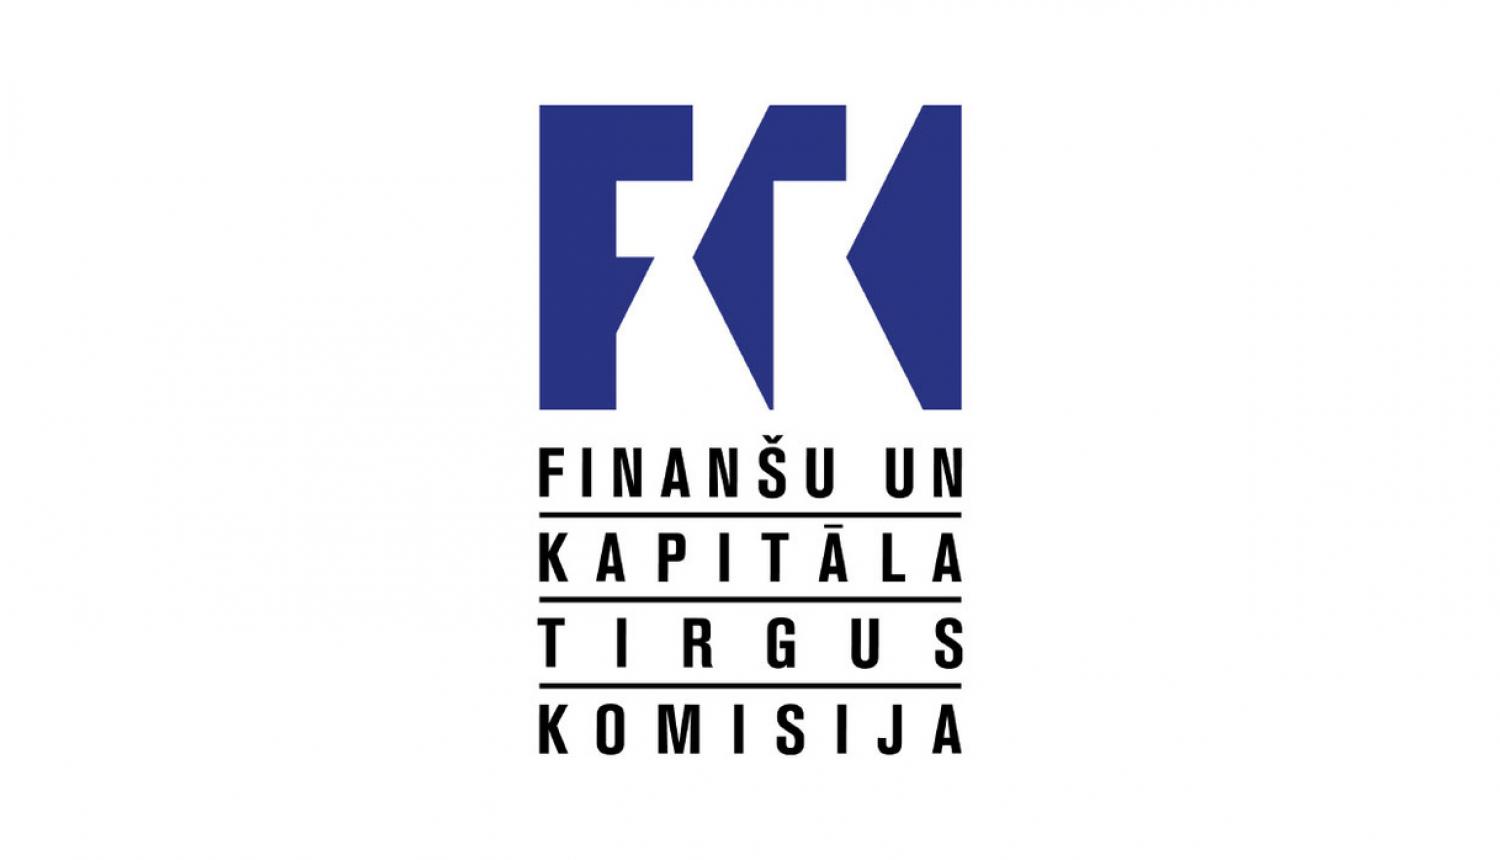 FKTK ir pieņēmusi lēmumu par noguldījumu nepieejamību ABLV Bank AS